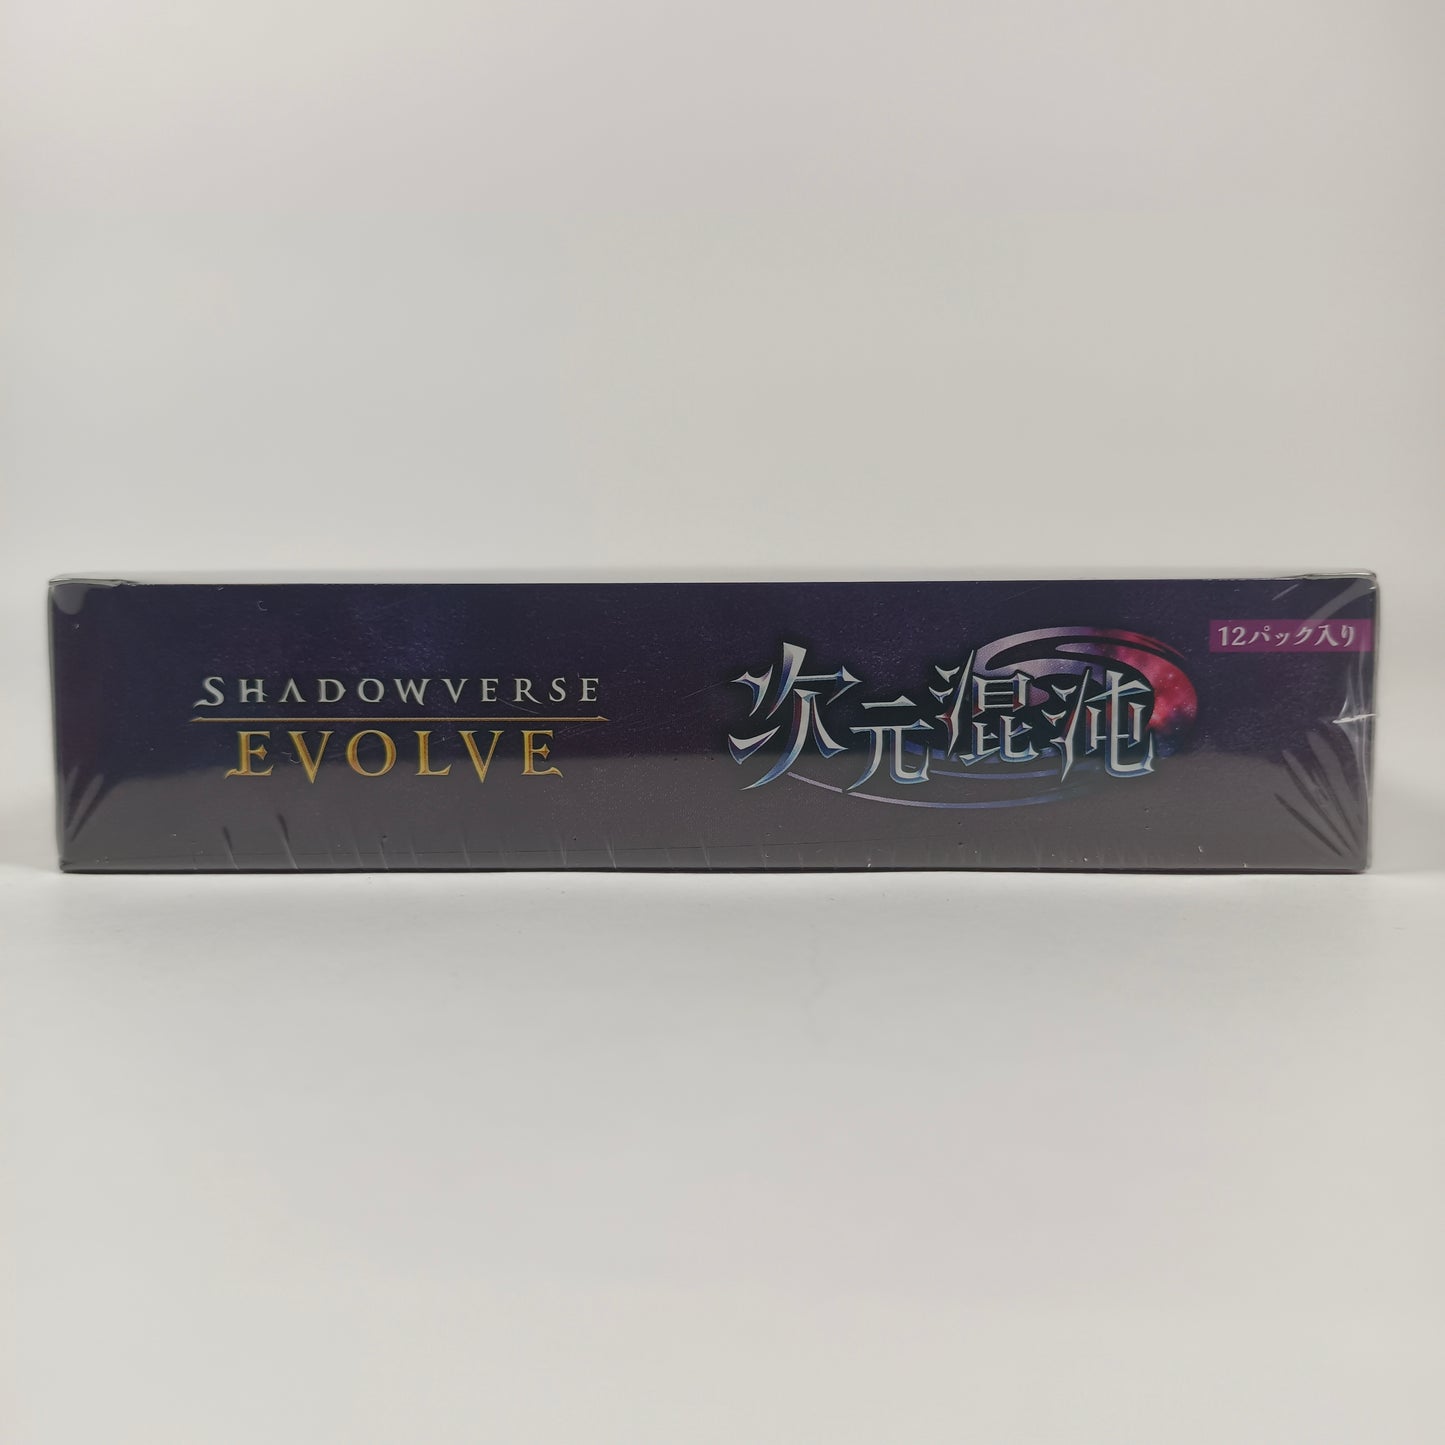 SHADOWVERSE EVOLVE Vol. 8 "DIMENSIONAL CHAOS" BOX